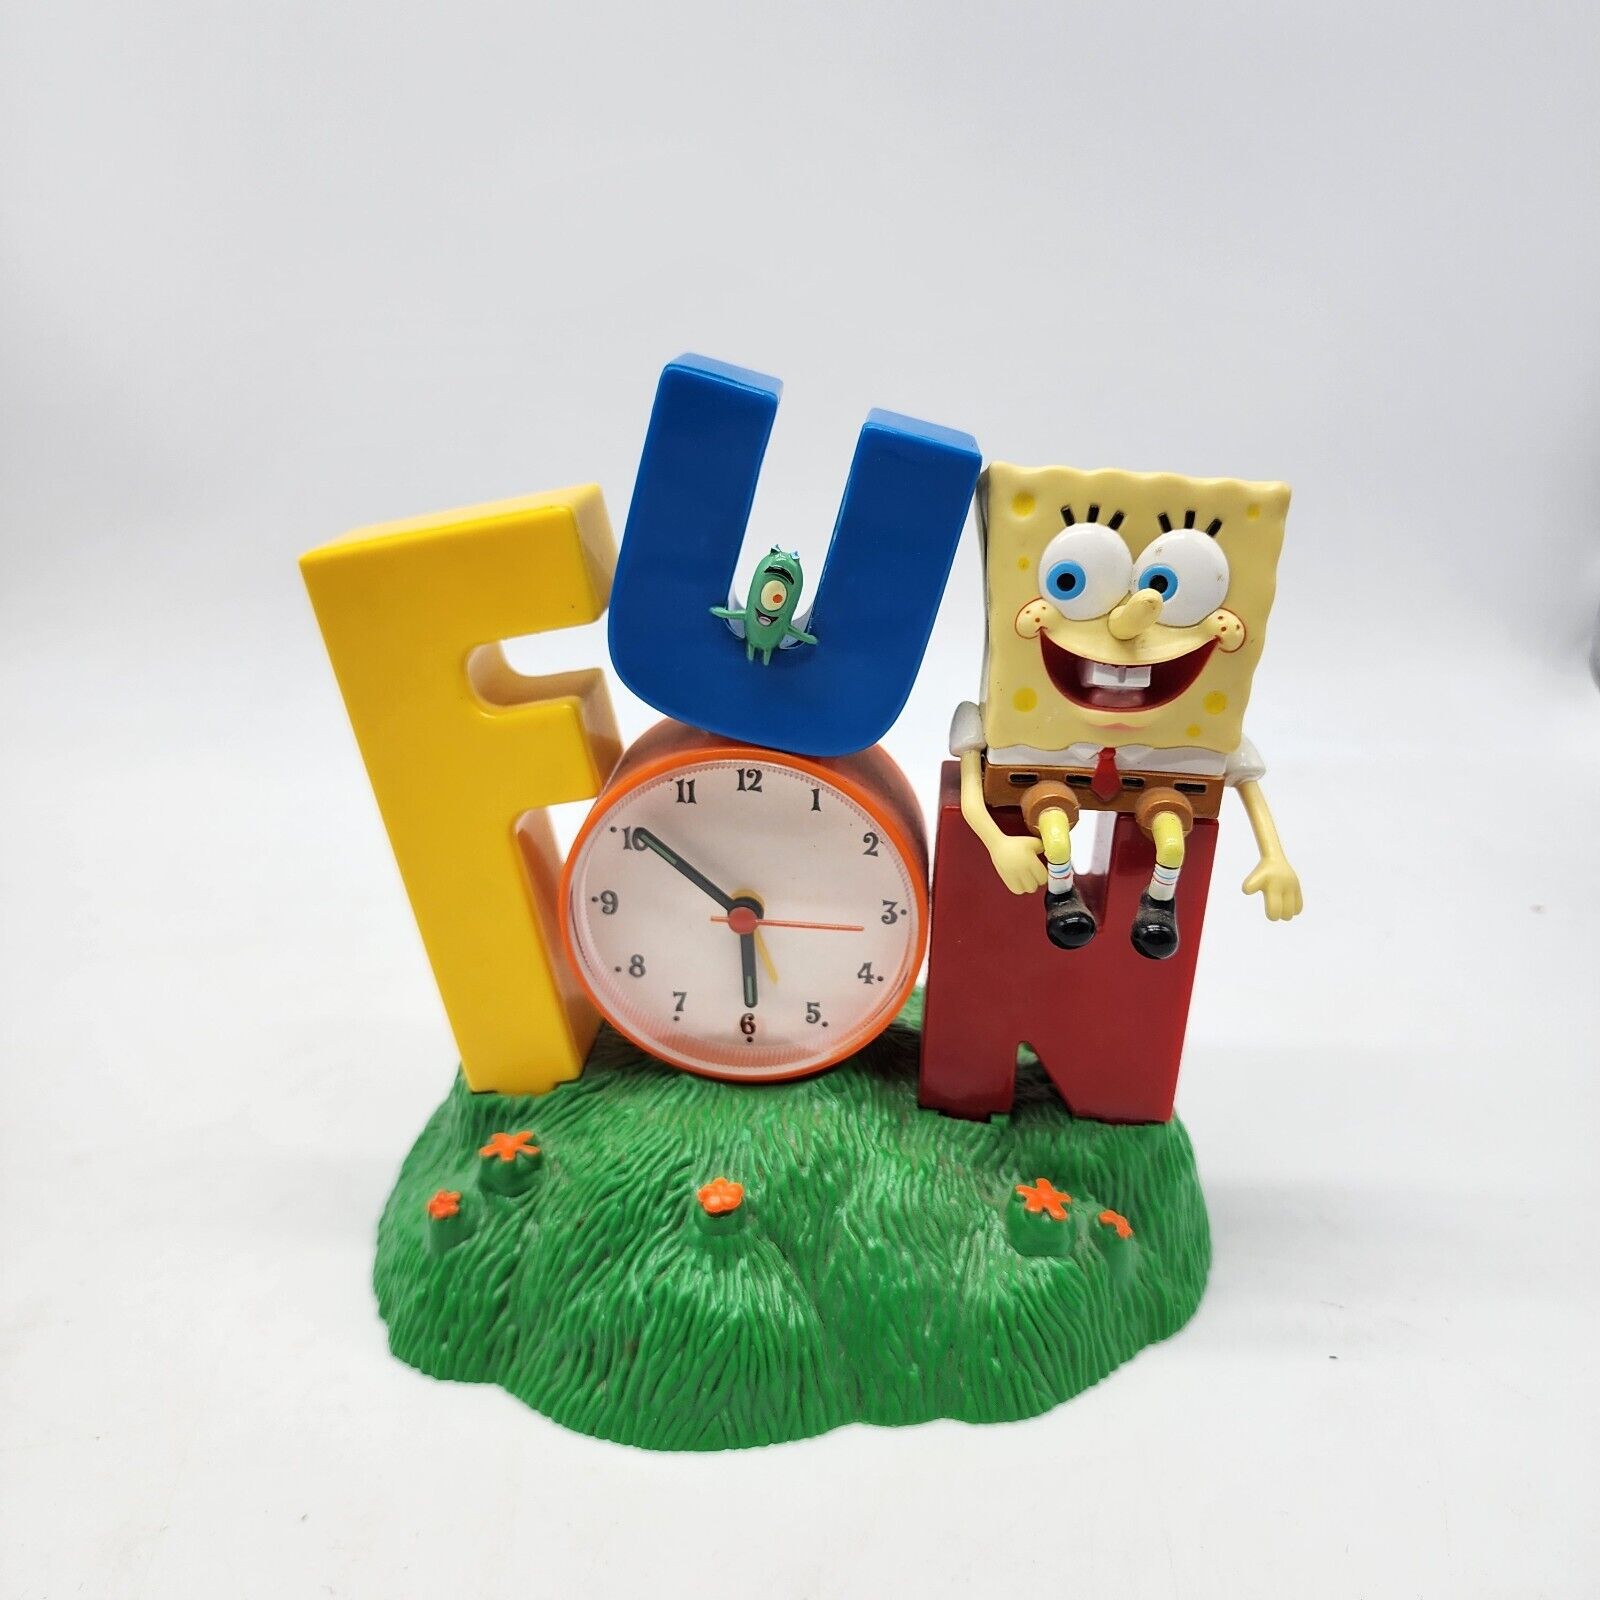 VTG 2002 Nickelodeon's Spongebob Squarepants FUN Singing Alarm Clock 